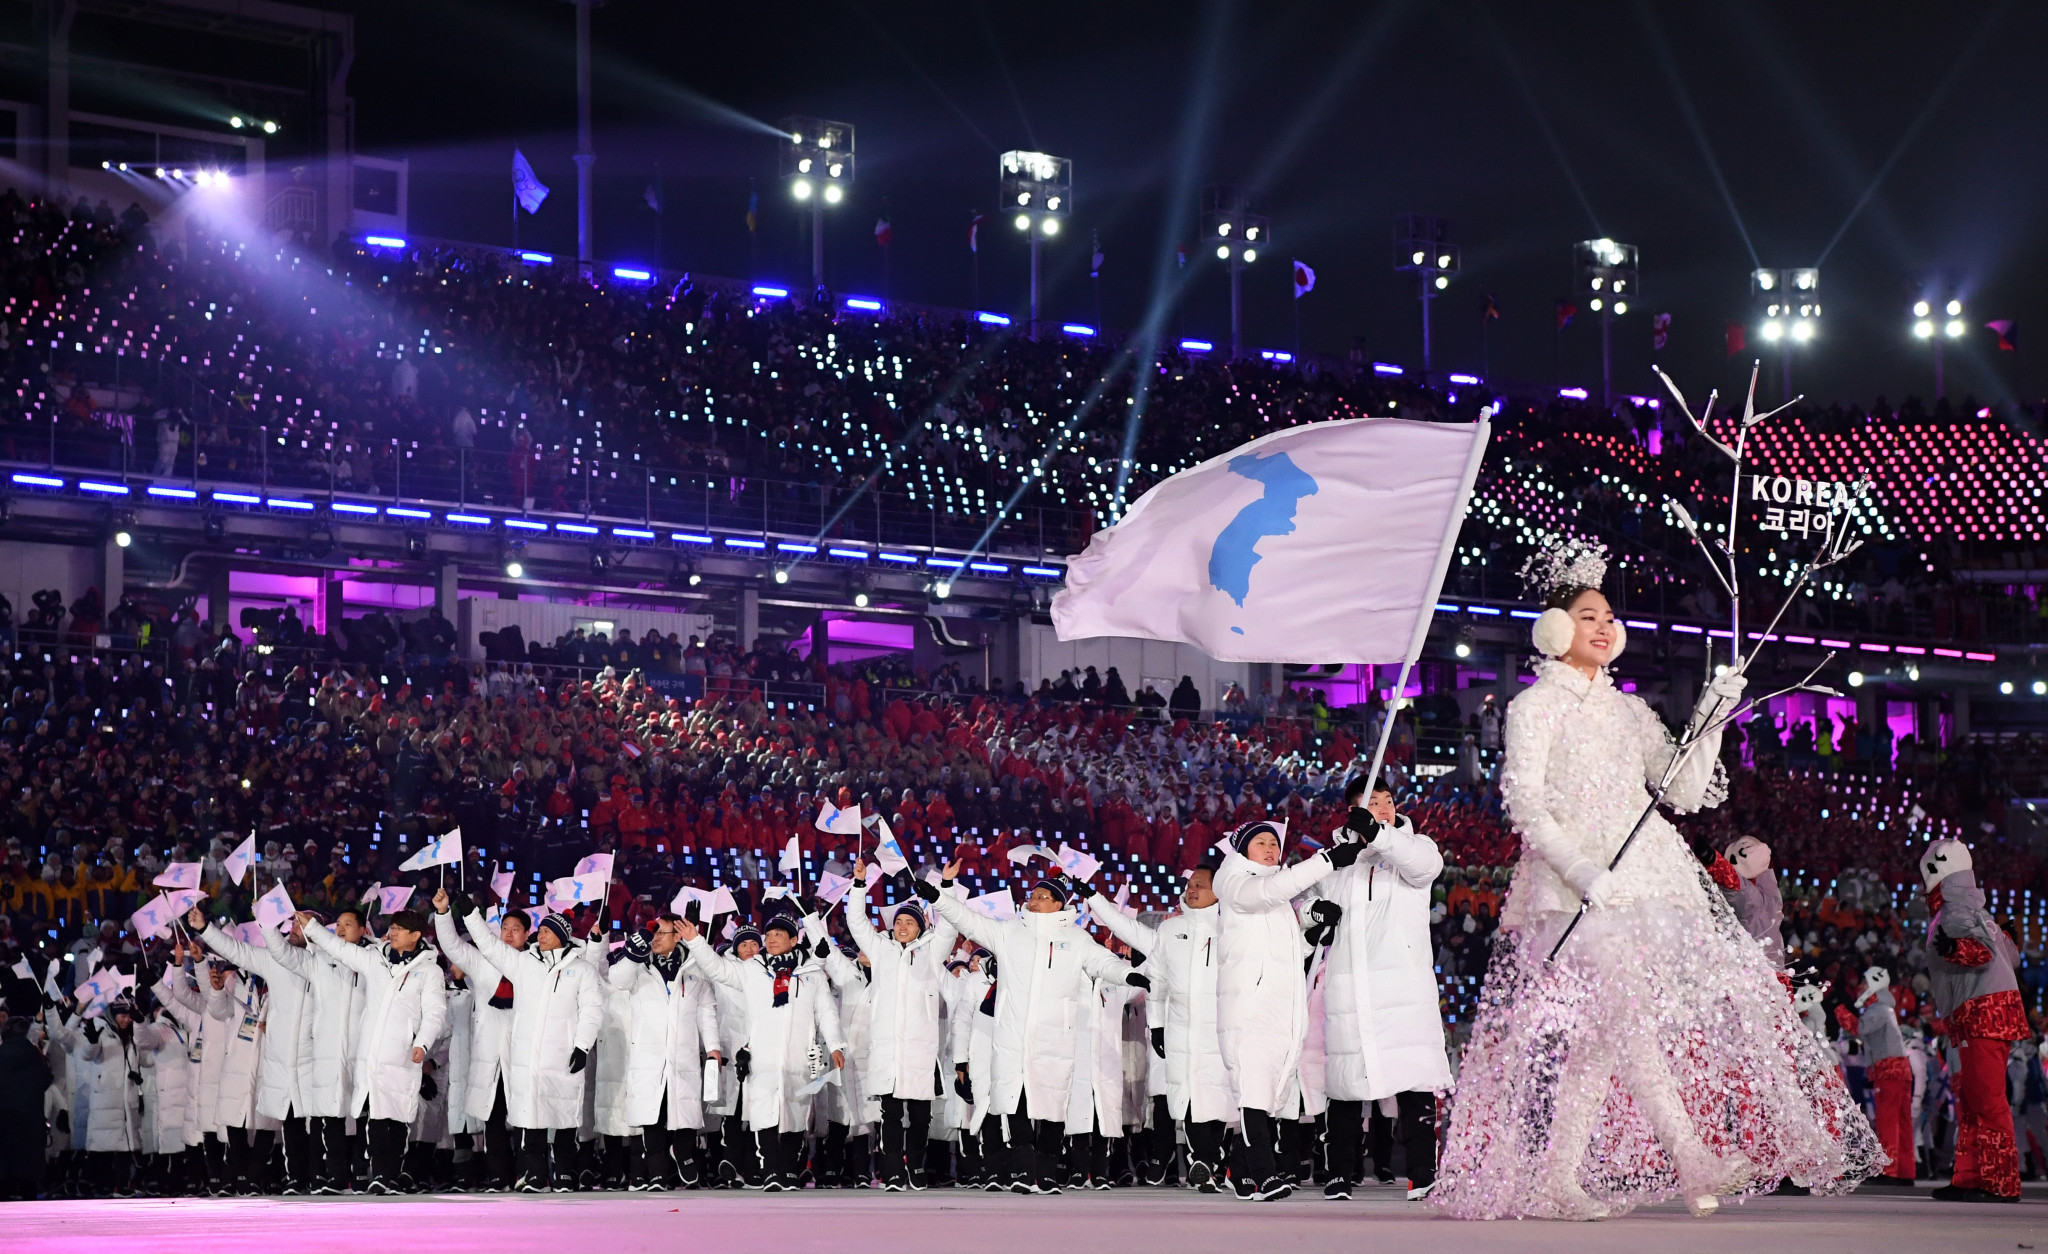 Looking back at the Pyeongchang 2018 Winter Olympics